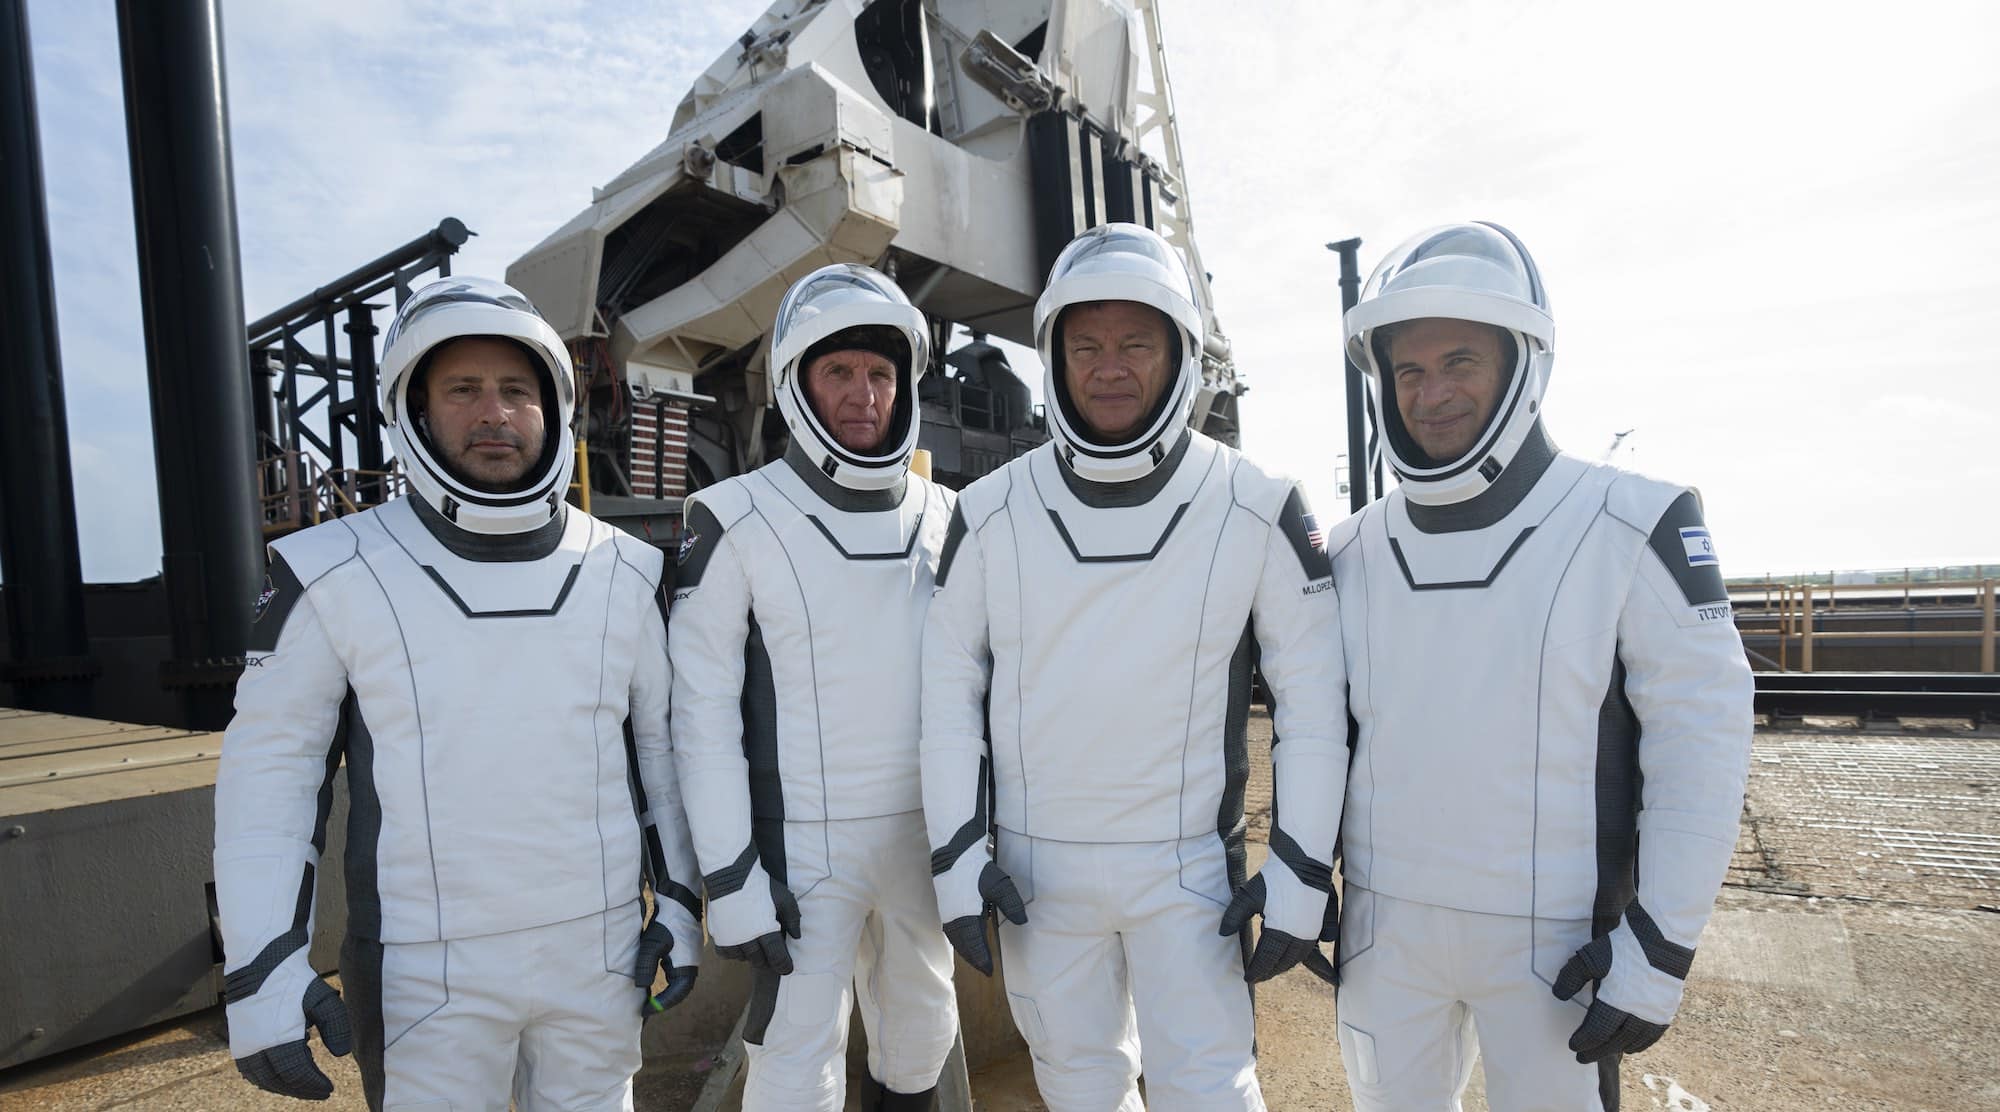 L’équipage de la mission privée Ax-1 (de gauche à droite) : Mark Pathy, Larry Cohen, Michael López-Alegría et Eytan Stibbe. Ils sont ici au pied du lanceur Falcon 9 en Floride. Crédit : SpaceX